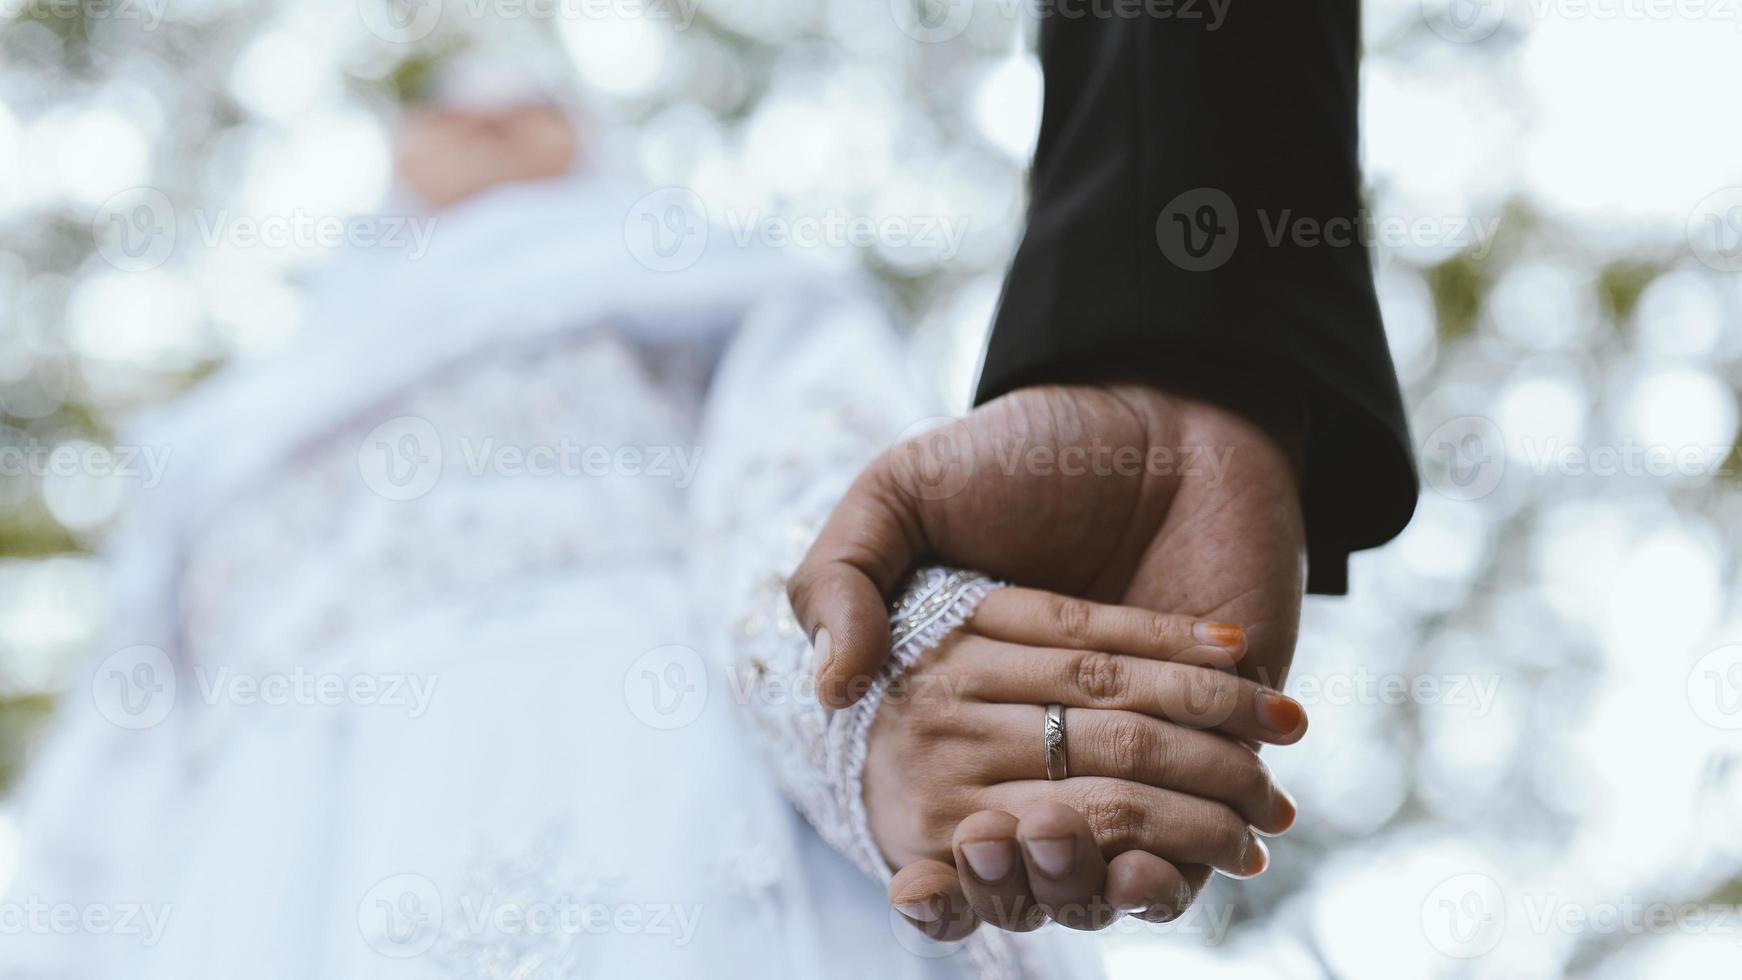 getrouwd stel hand in hand bij ceremonie bruiloft foto